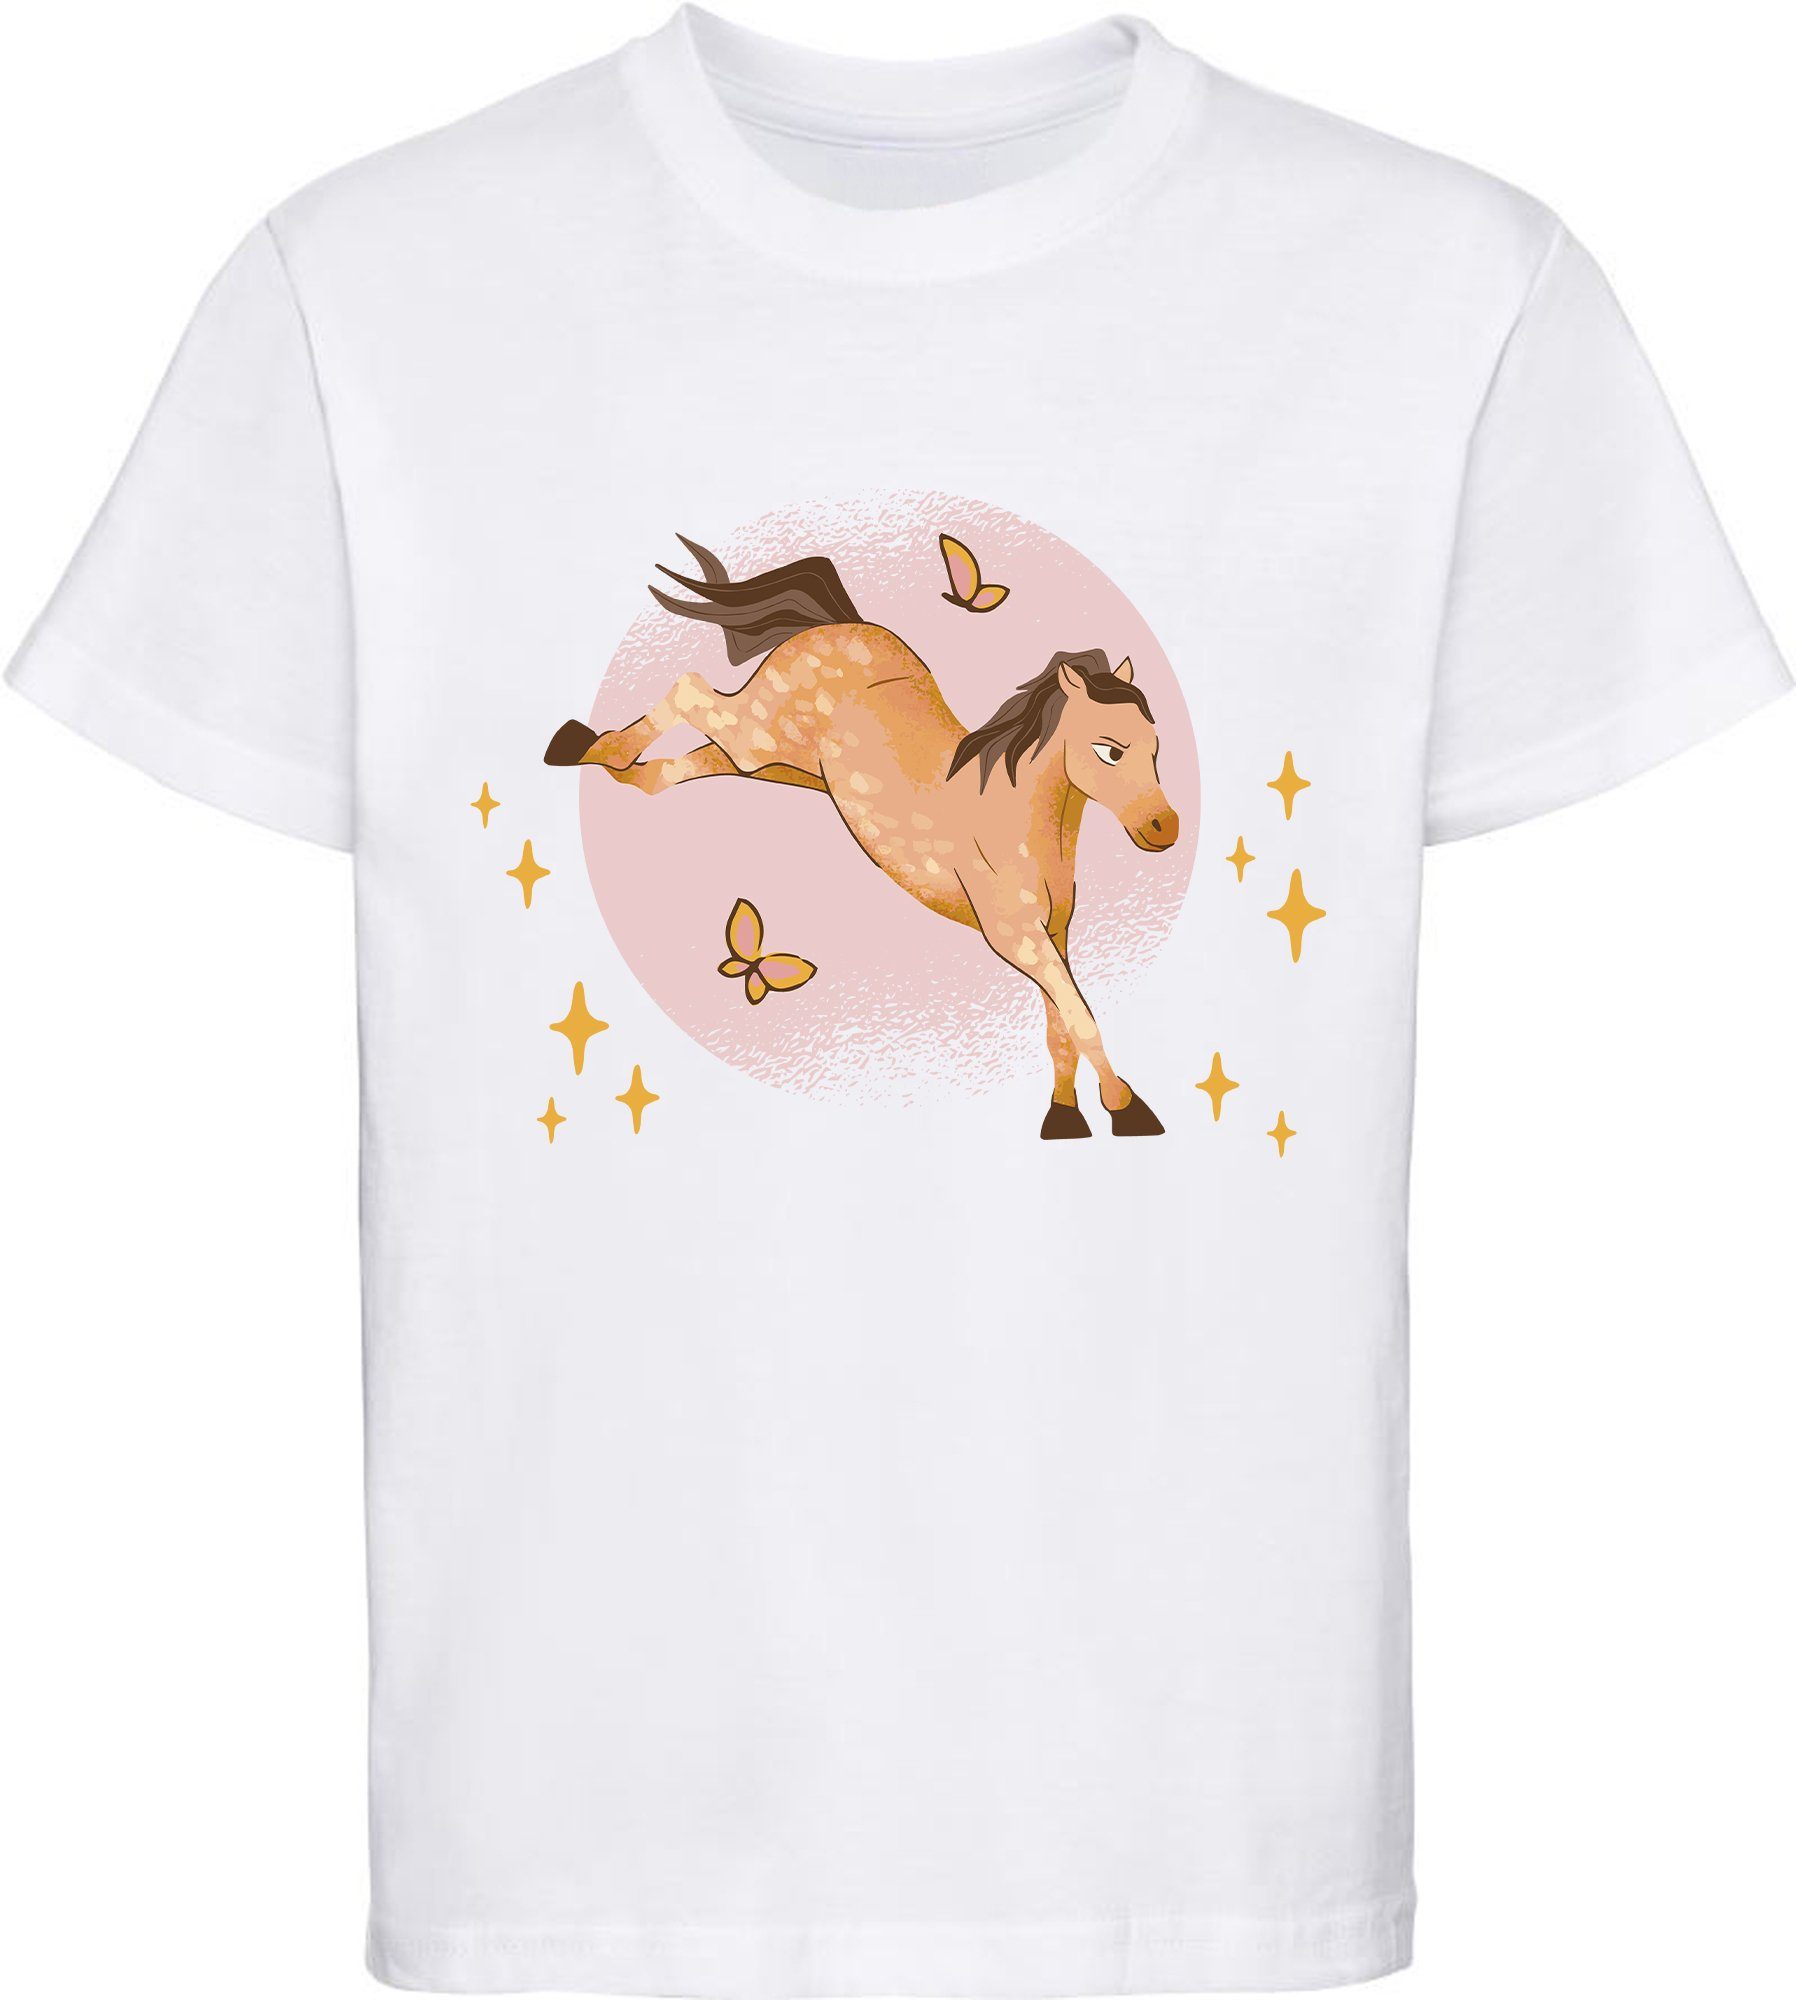 MyDesign24 Print-Shirt bedrucktes Mädchen T-Shirt austretendes Pferd und Schmetterlinge Baumwollshirt mit Aufdruck, i157 weiss